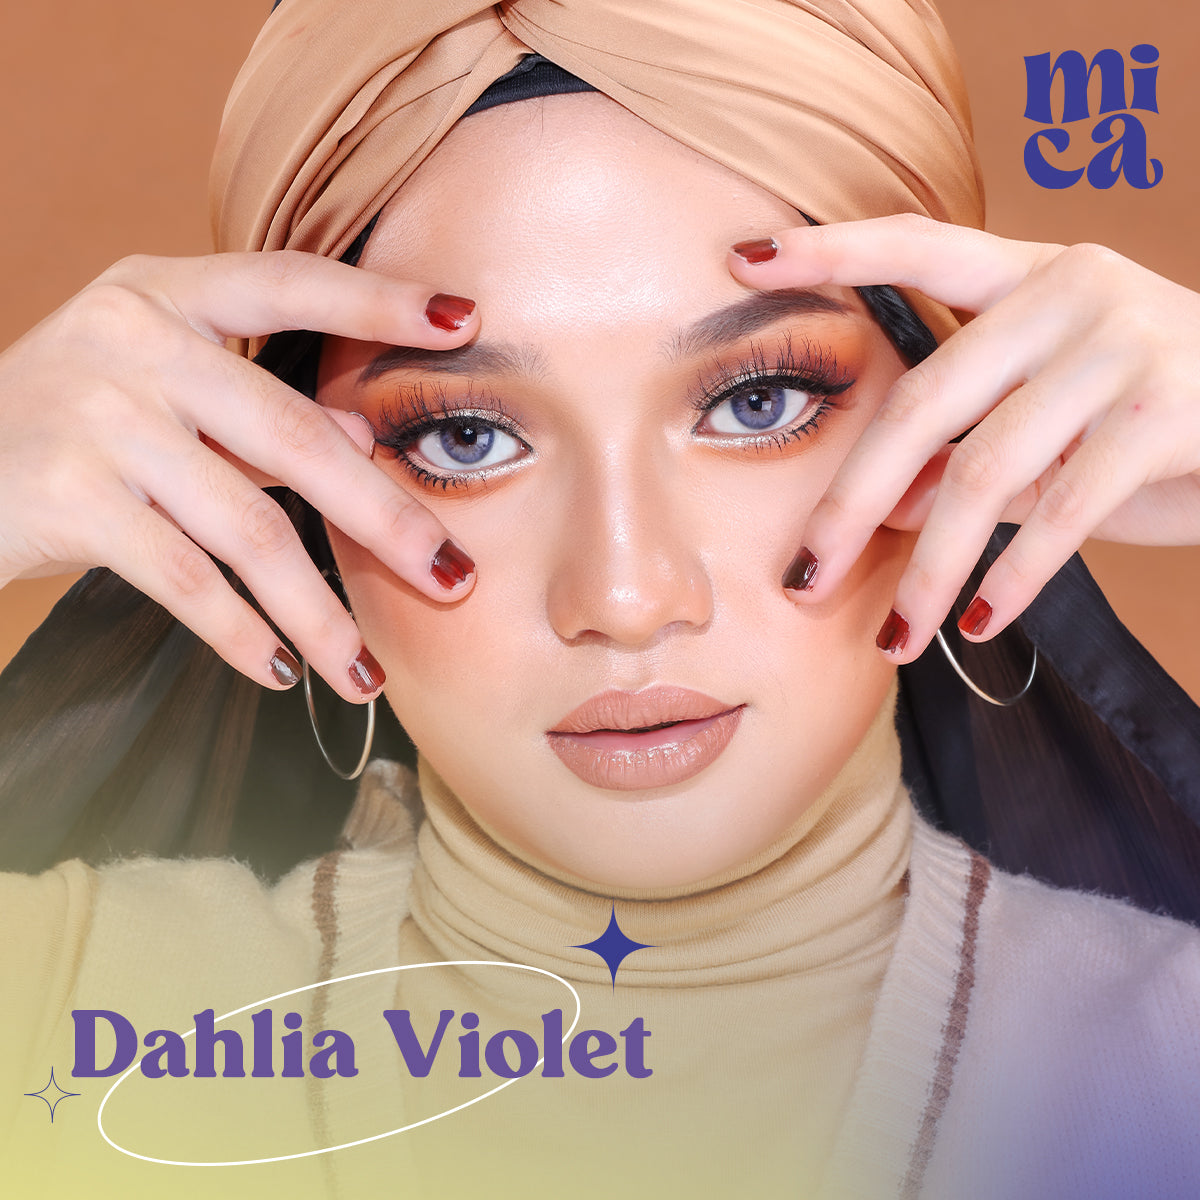 Dahlia Violet 0-800